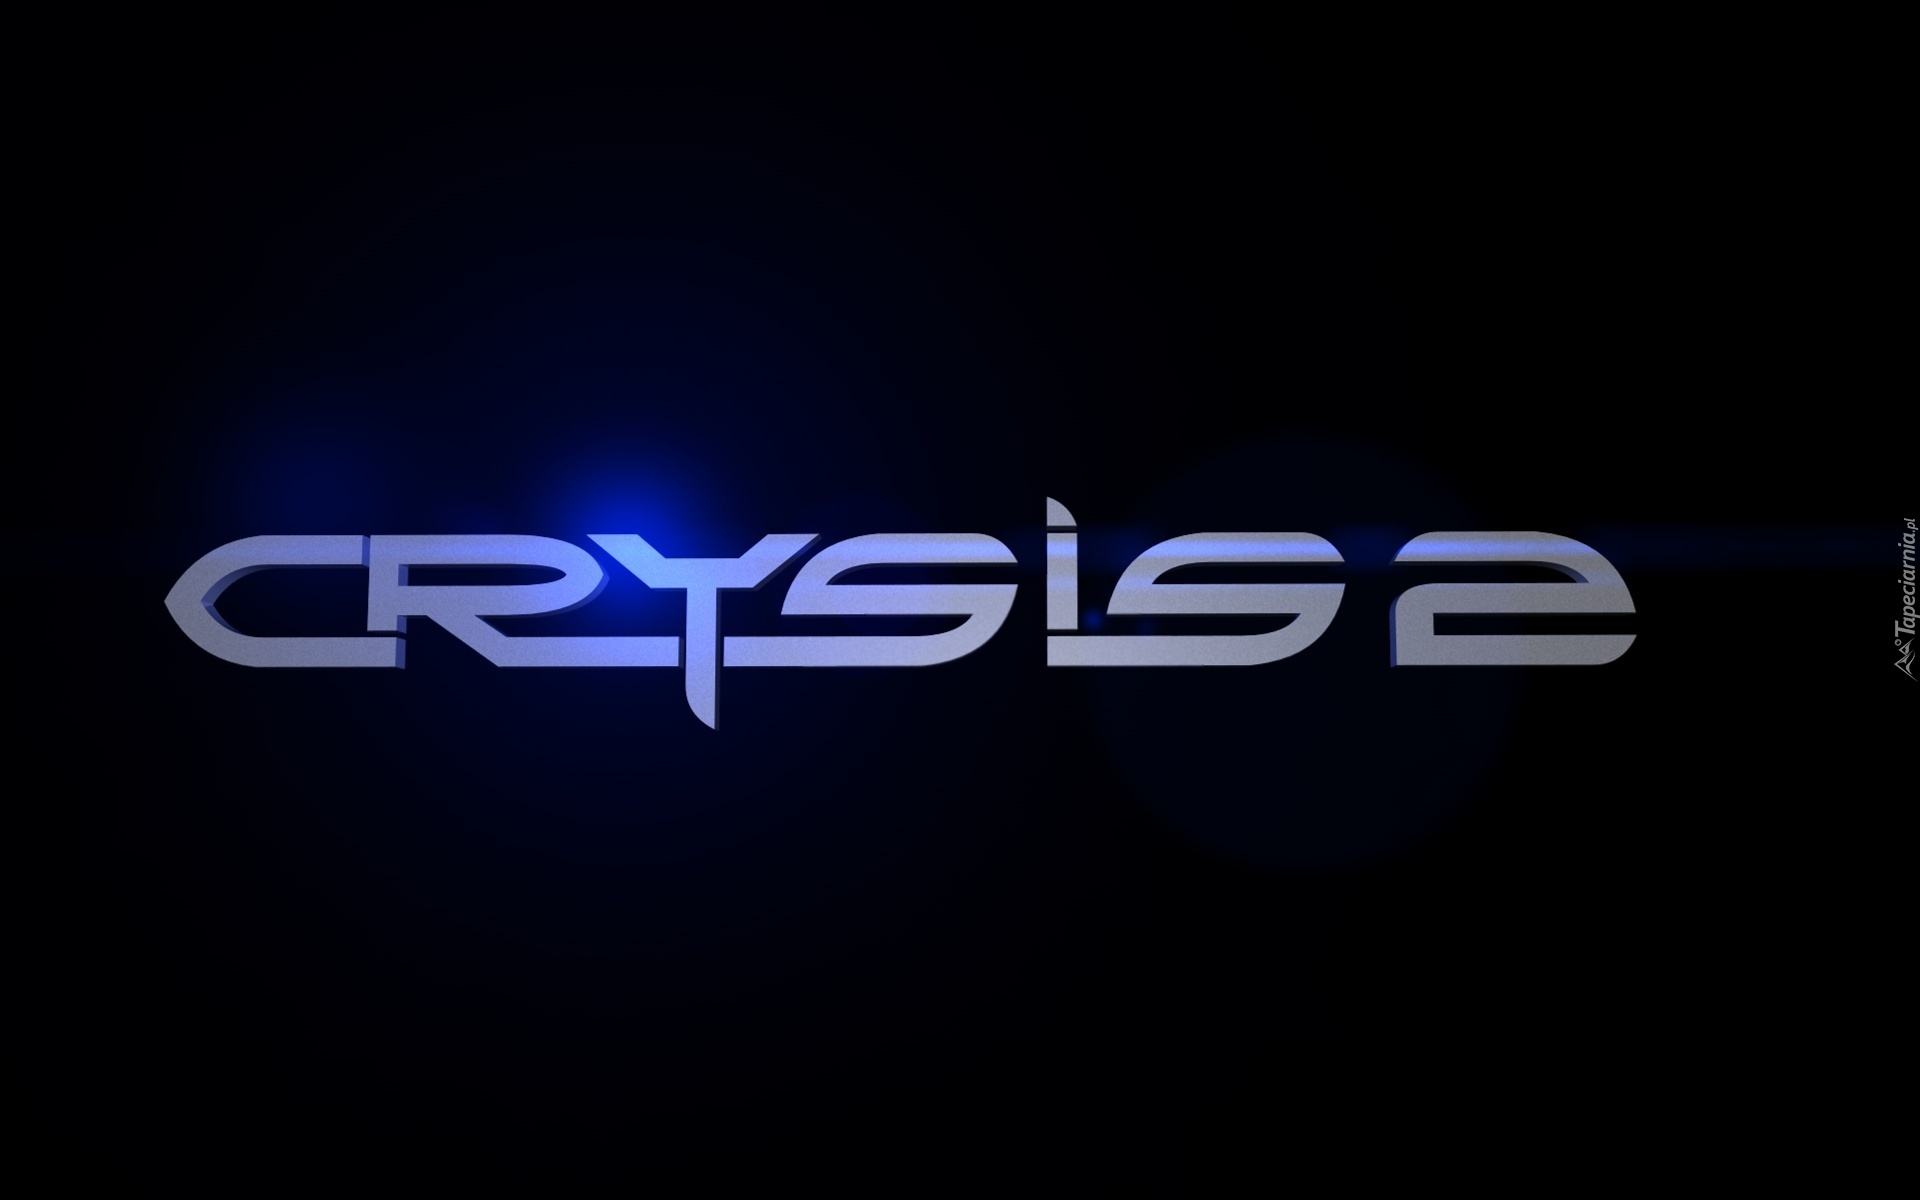 Logo, Crysis 2